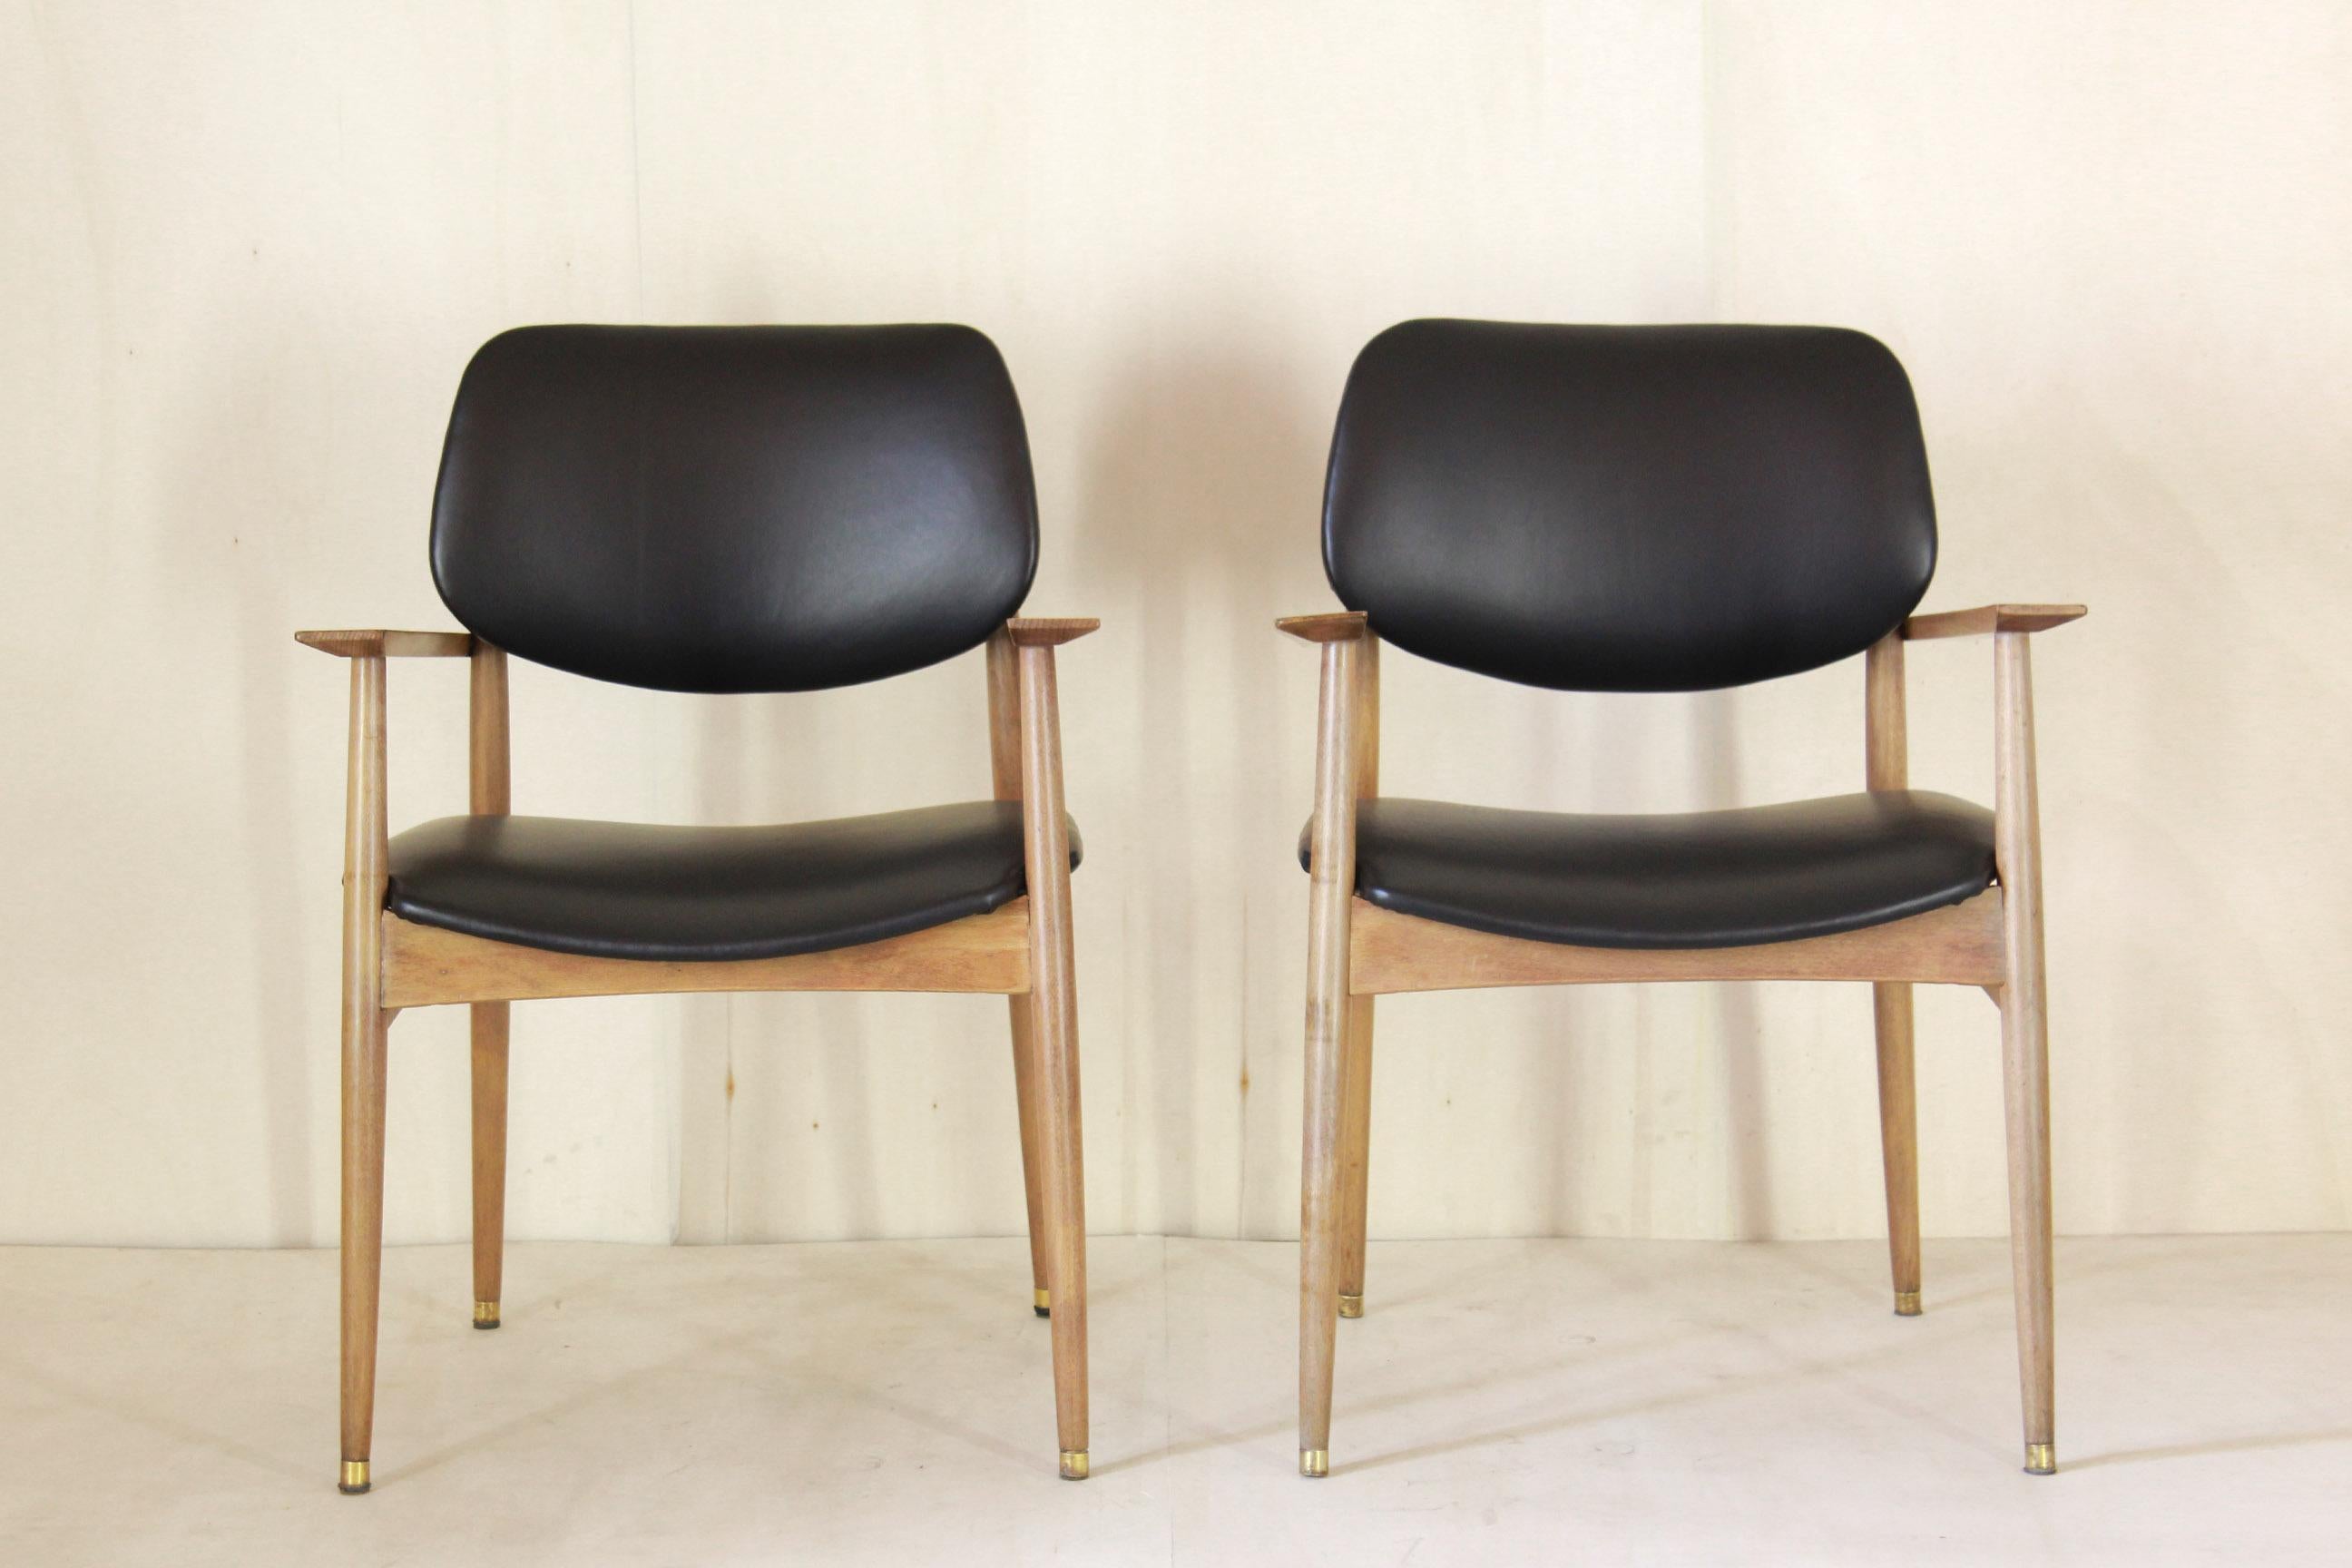 Chaises de bureau vintage en cuir noir, lot de deux, Italie années 1950.
Un ensemble de deux fauteuils de salon / bureau vintage avec structure en bois de hêtre et assise et dossier en cuir bovin. L'article a été restauré comme suit :
Le bois a été